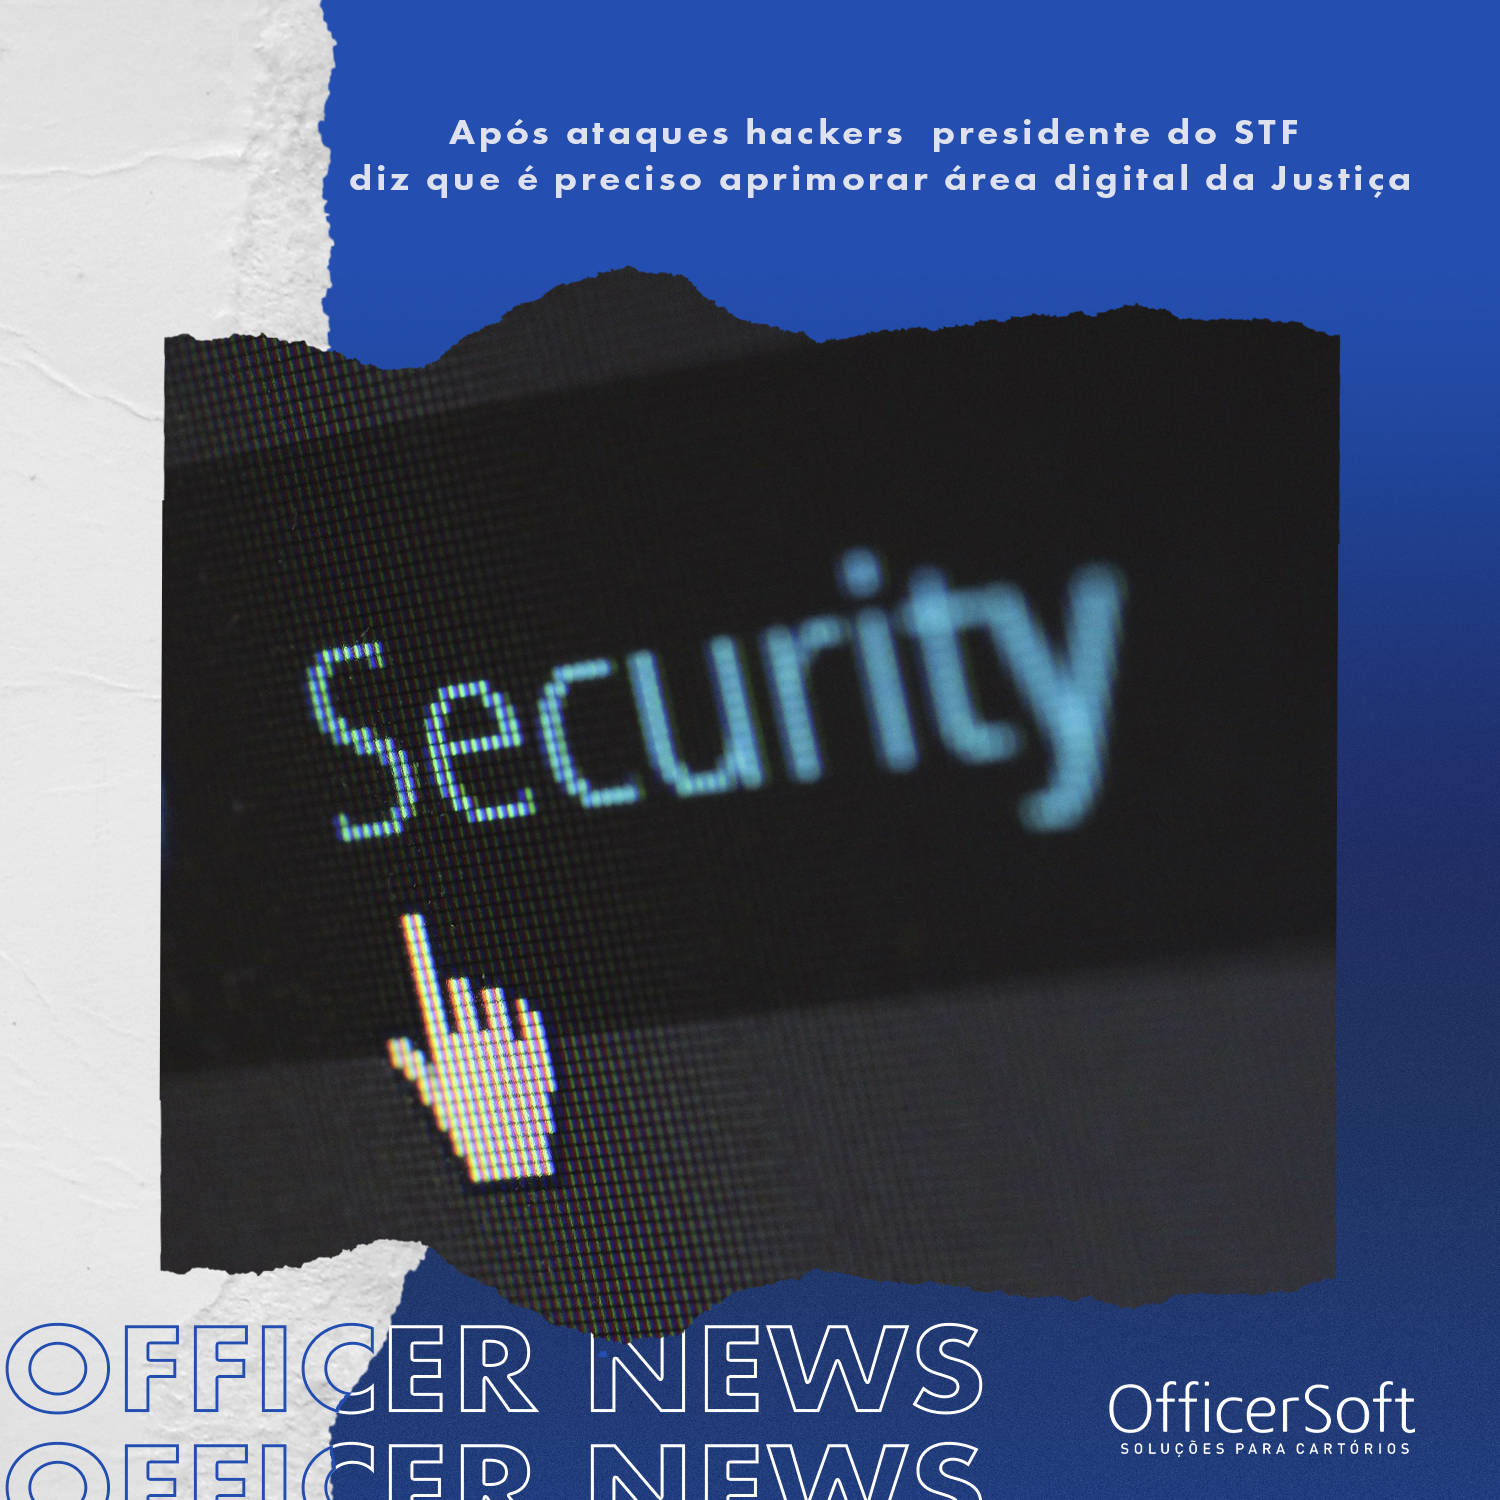 Officer News – Após ataques hackers presidente do STF diz que é preciso aprimorar área digital da justiça